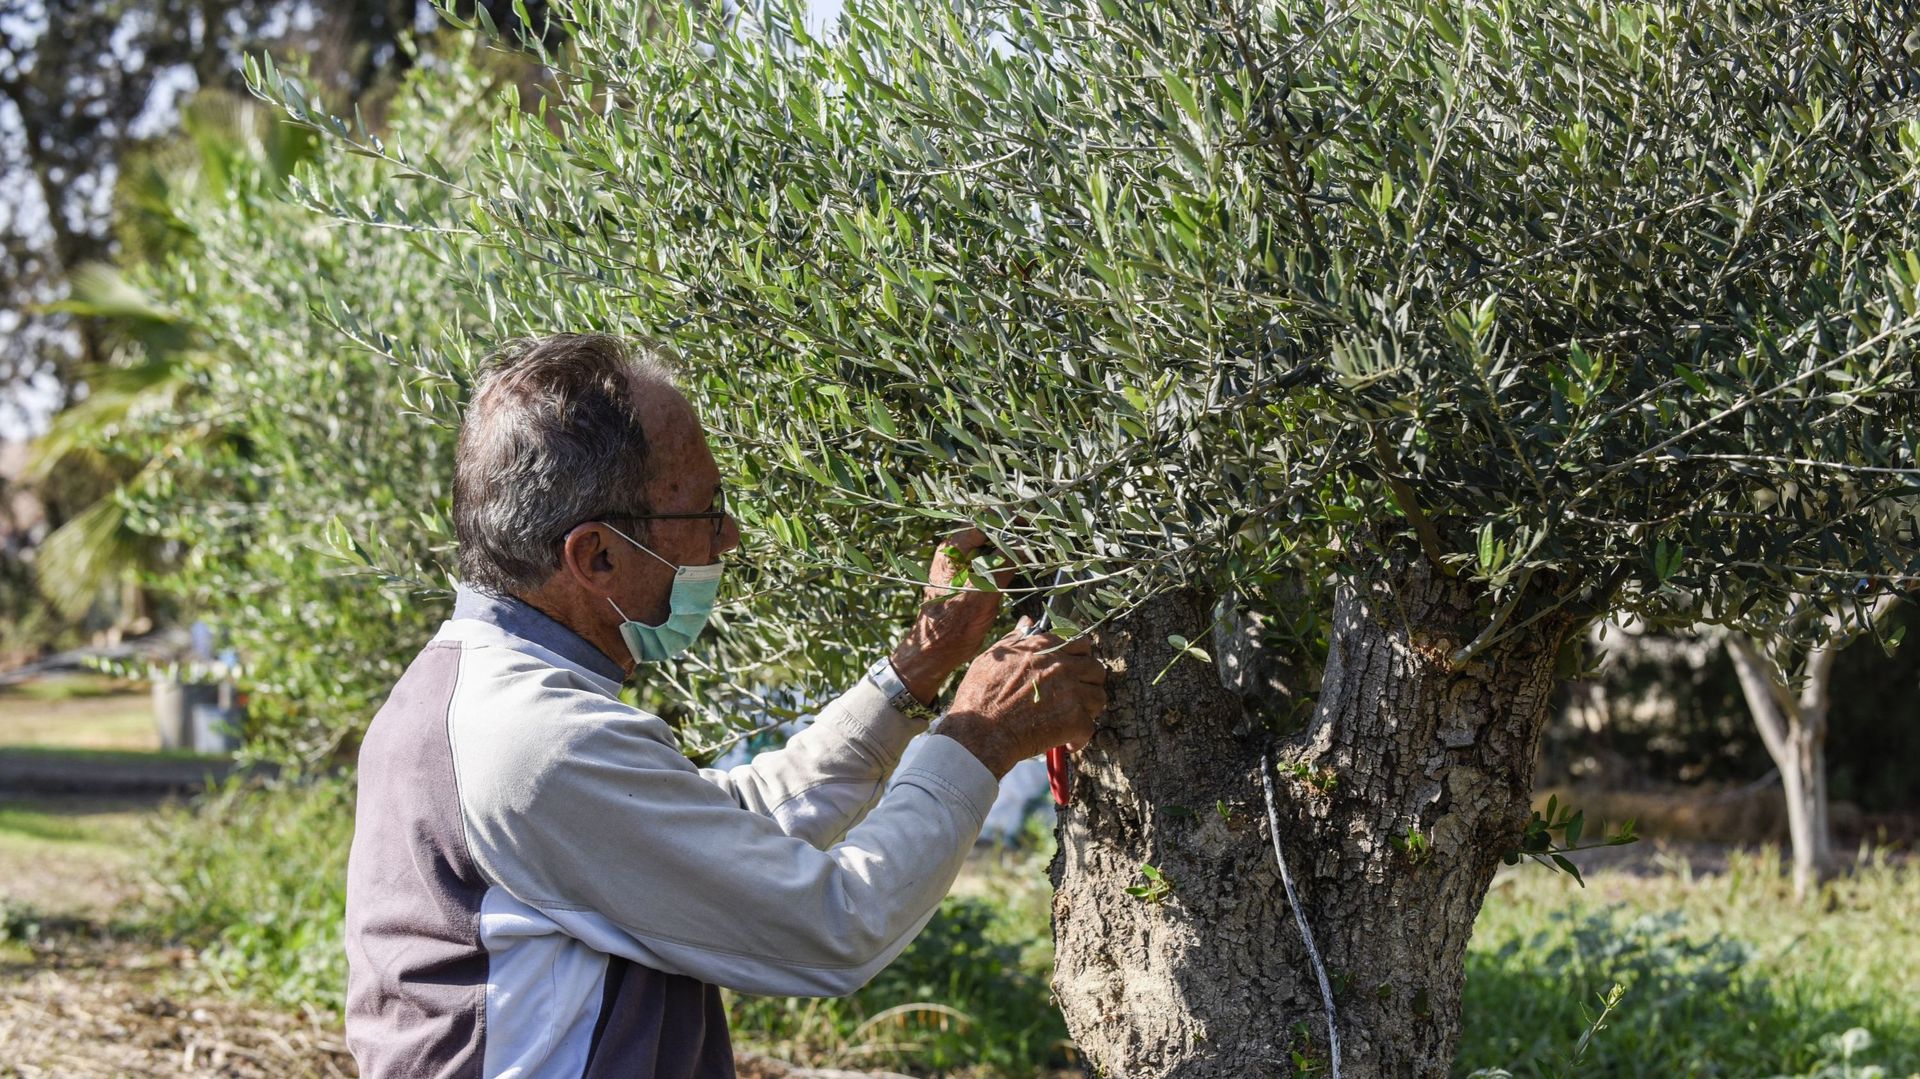 A Chypre, le changement climatique menace la culture millénaire des oliviers